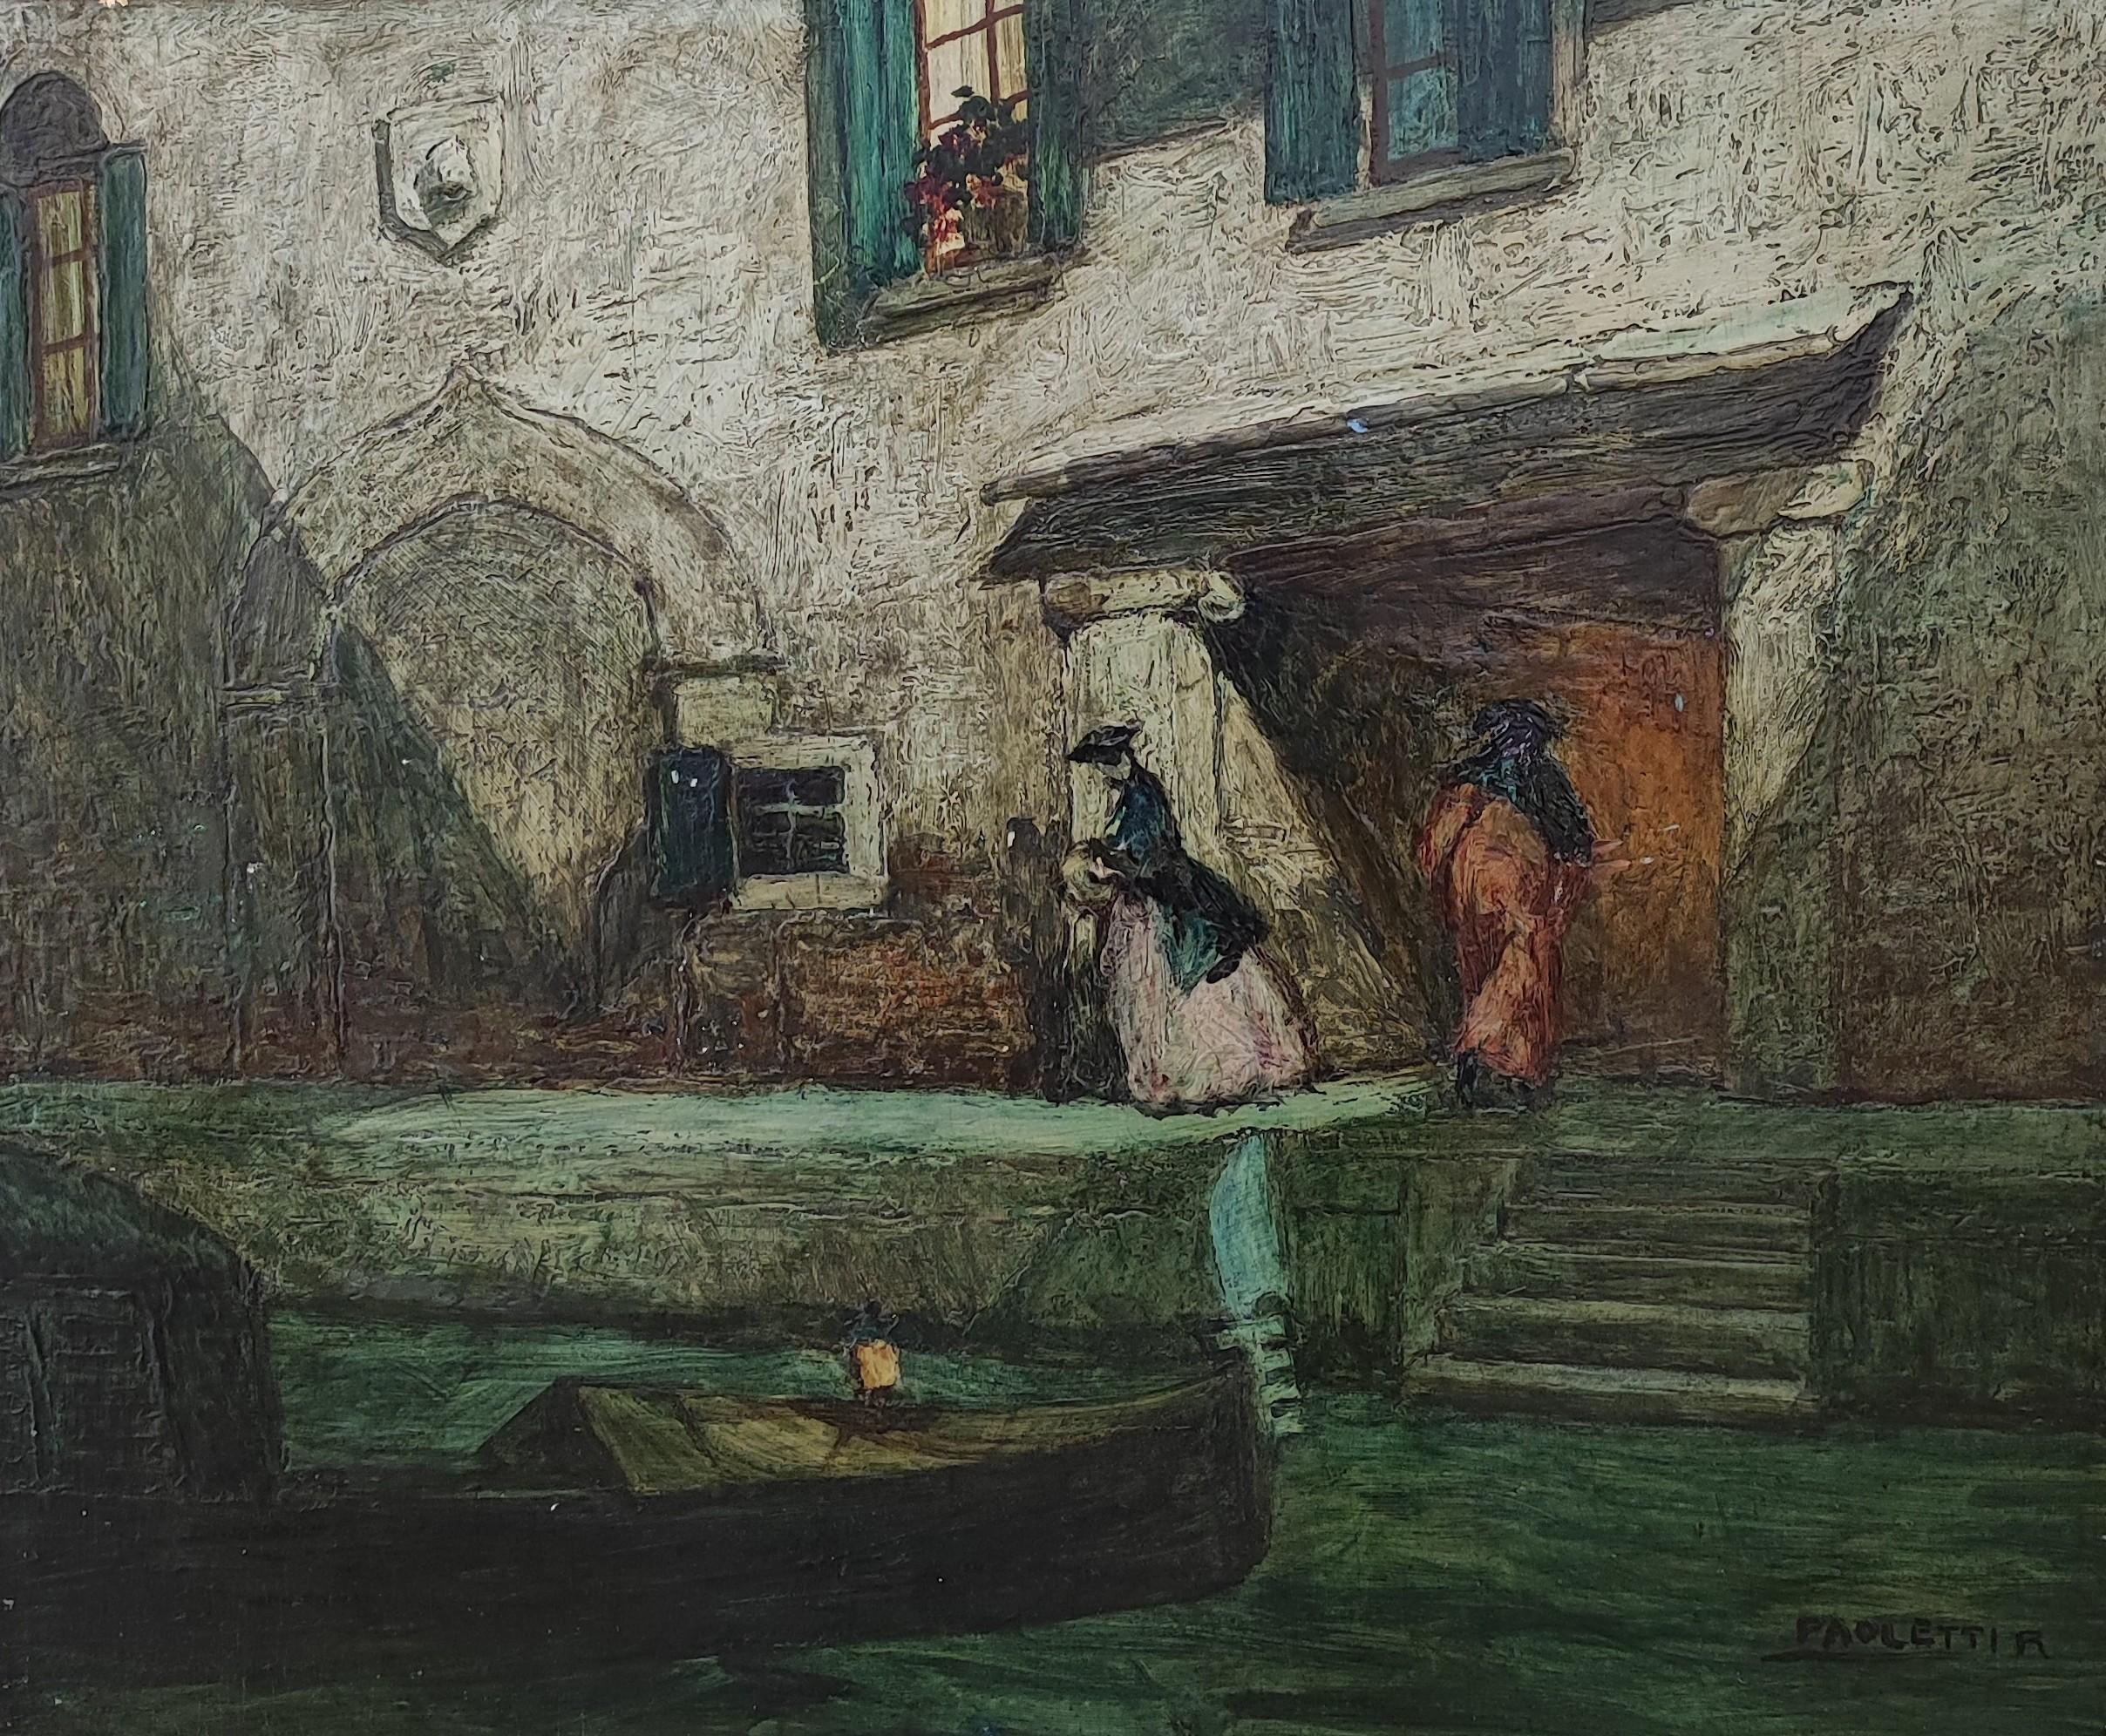 Landscape Painting Rodolfo Paoletti - La Venise mystérieuse